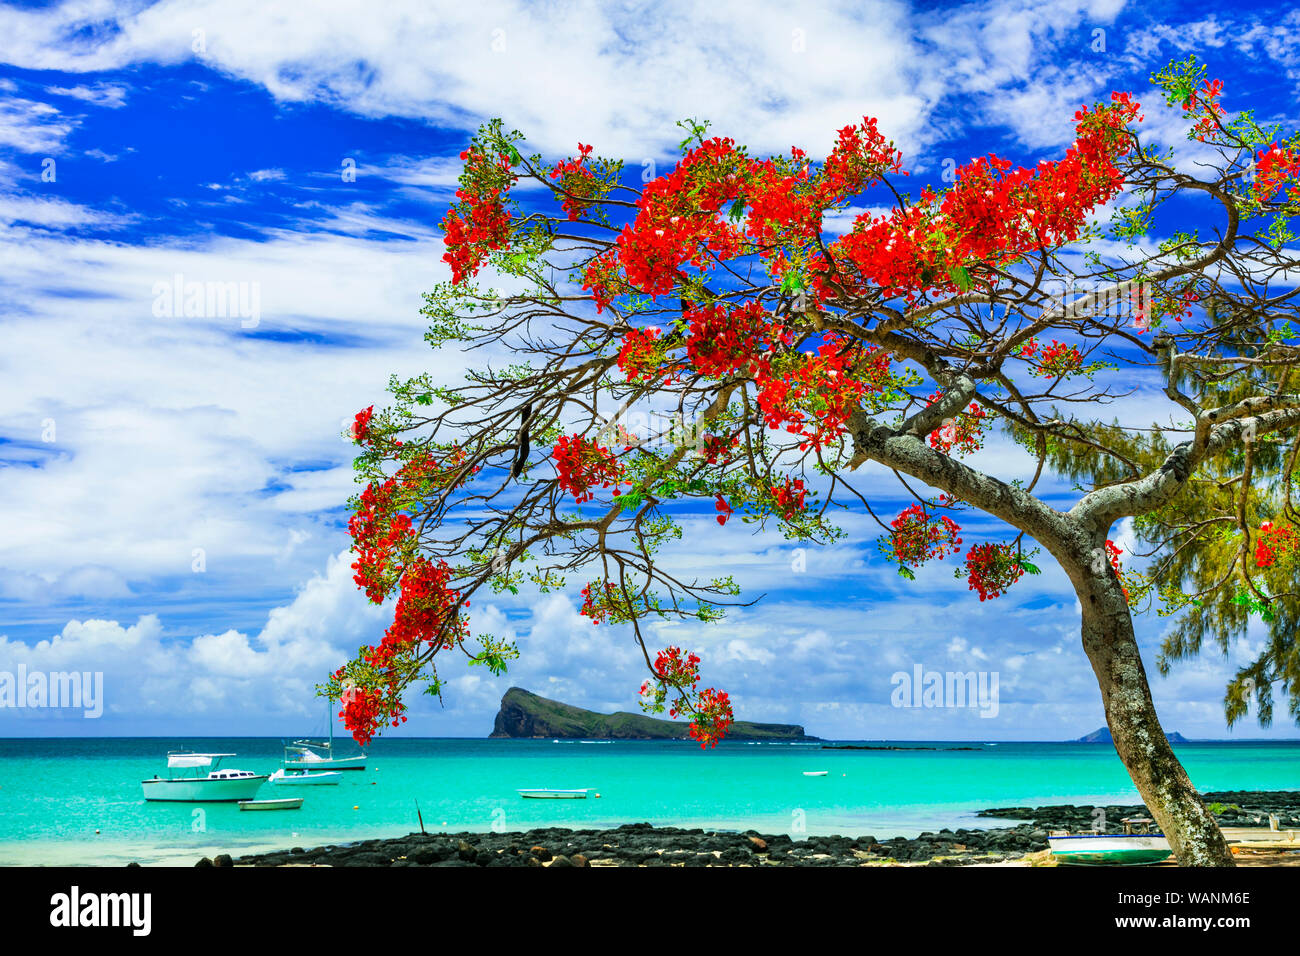 Belle vue,Cap Malheureux avec la mer turquoise et rouge flamboyant,arbre traditionnel de l'île Maurice. Banque D'Images